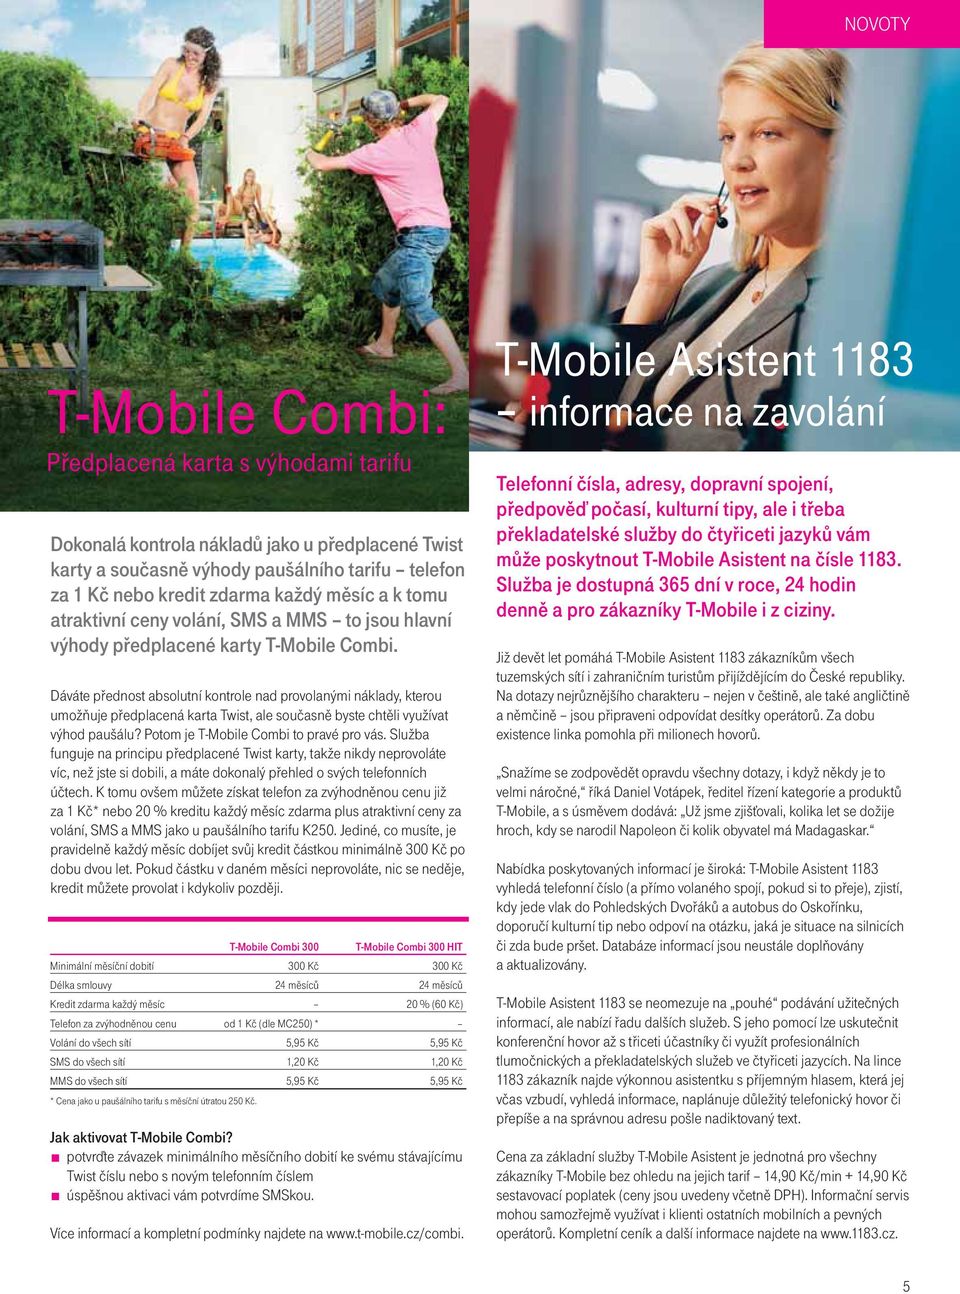 Dáváte přednost absolutní kontrole nad provolanými náklady, kterou umožňuje předplacená karta Twist, ale současně byste chtěli využívat výhod paušálu? Potom je T-Mobile Combi to pravé pro vás.